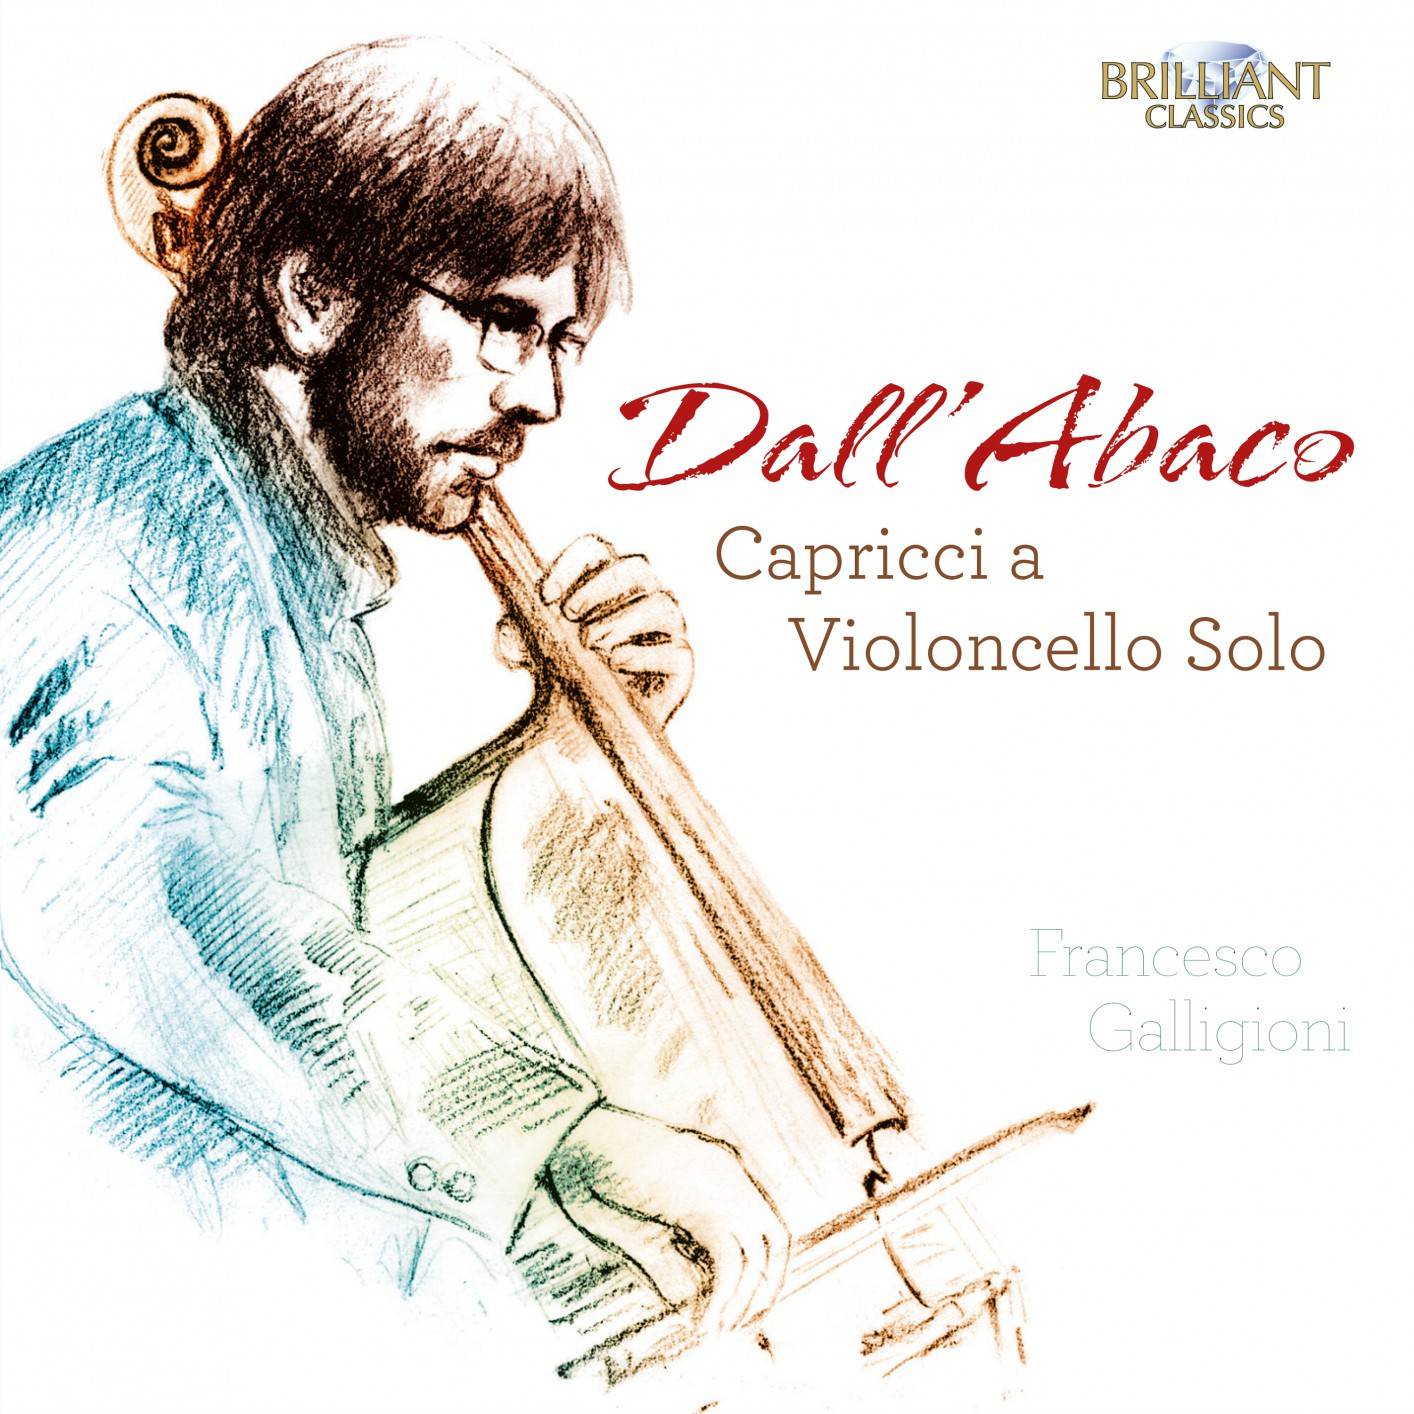 Francesco Galligioni – Dall’Abaco: Capricci a Violoncello Solo (2018) [FLAC 24bit/88,2kHz]